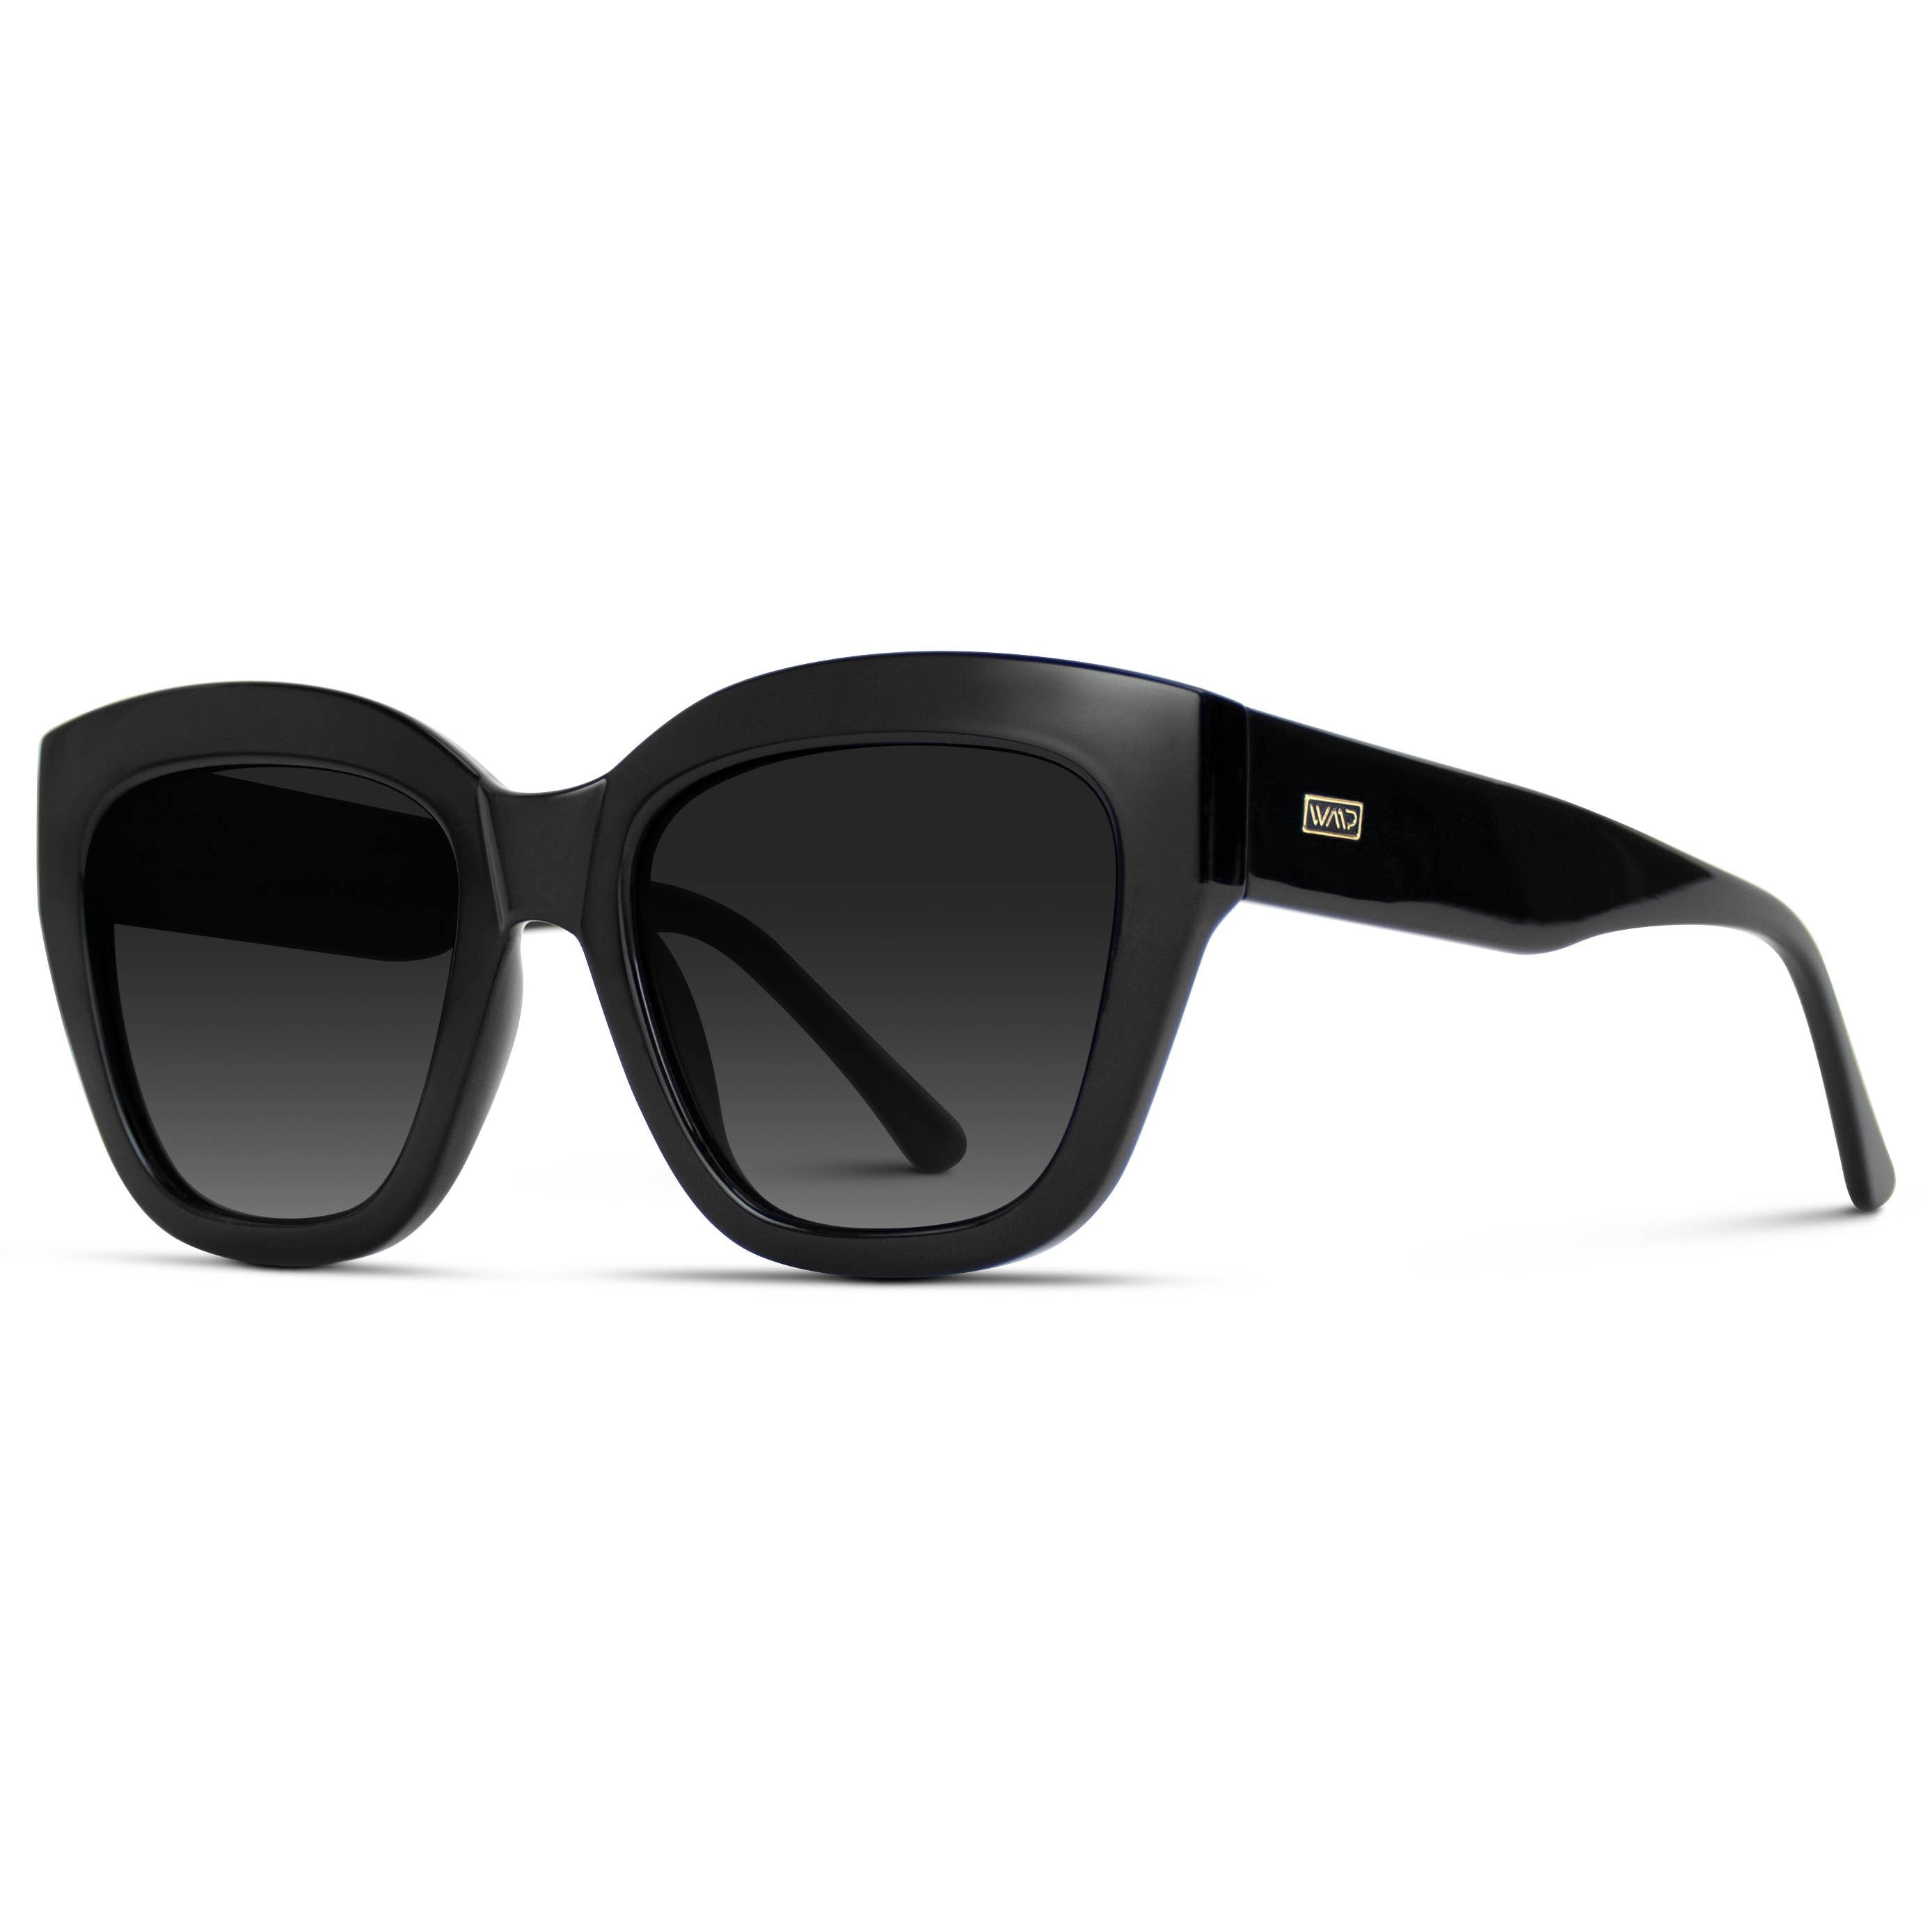 Ava - Oversized Cat Eye Sunglasses for Women